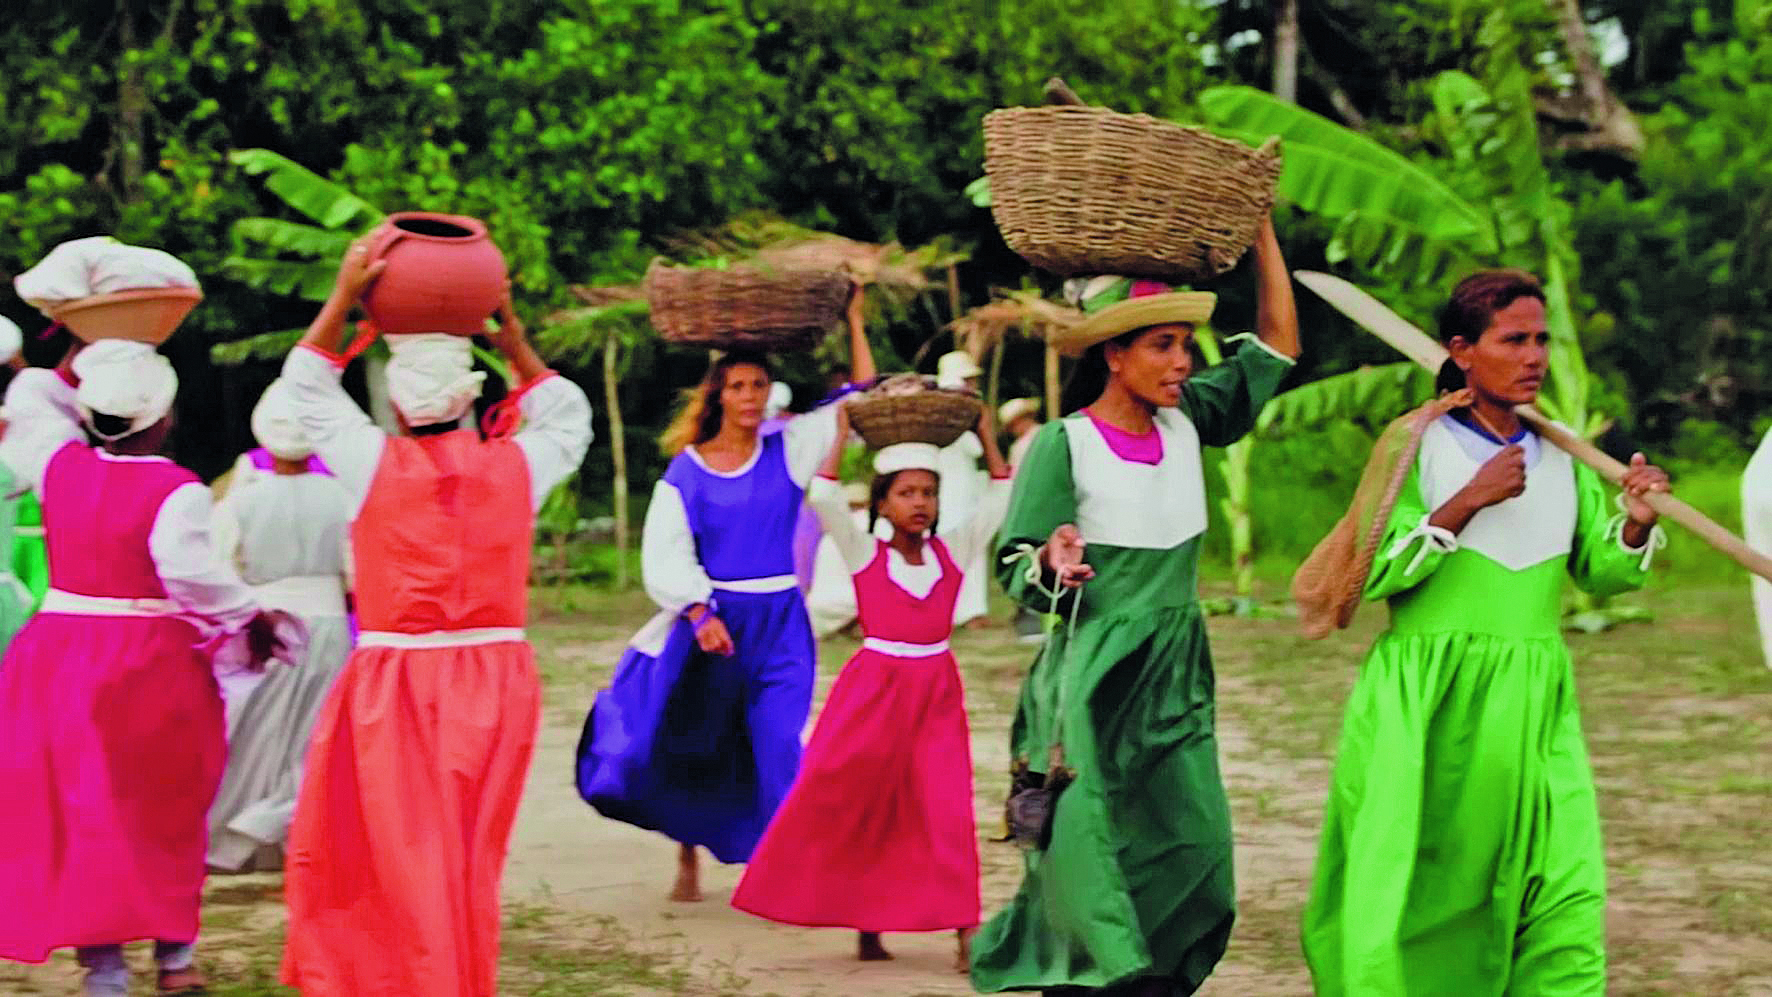 Fotografia. Um conjunto de mulheres em pé sobre um campo gramado, próximas umas às outras, cada uma delas utilizando um vestido longo com cores diferentes, apoiando objetos sobre suas cabeças, como cestas, bacias e tigelas. Ao fundo, árvores e plantas.